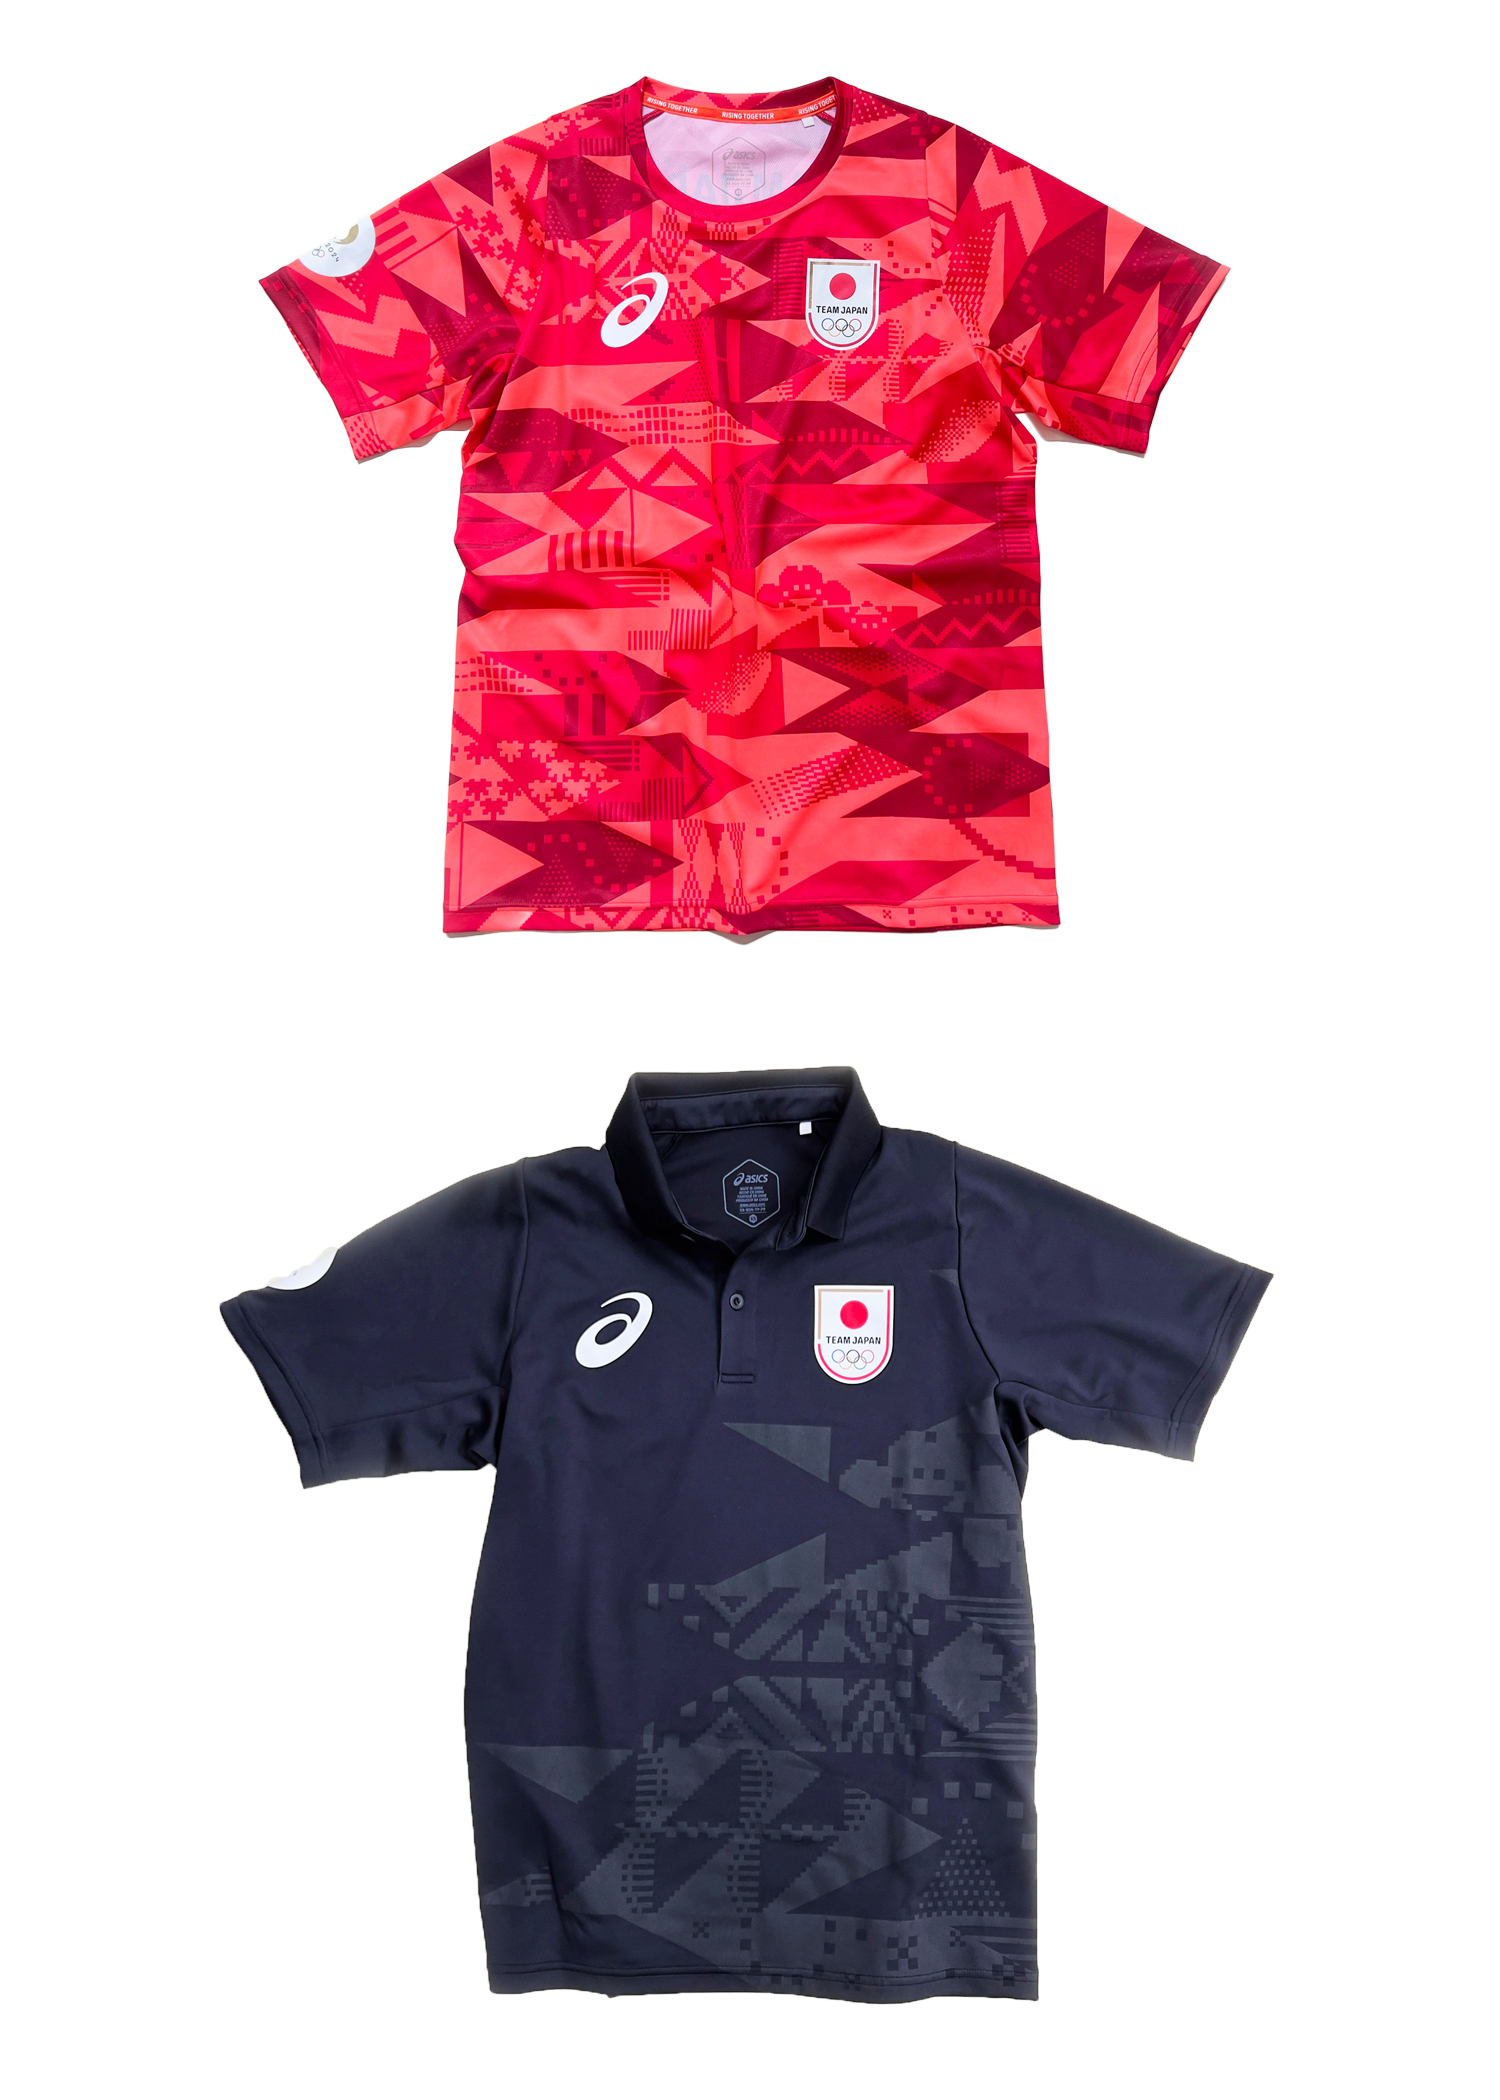 スポーツウェア・TEAM JAPAN公式服装